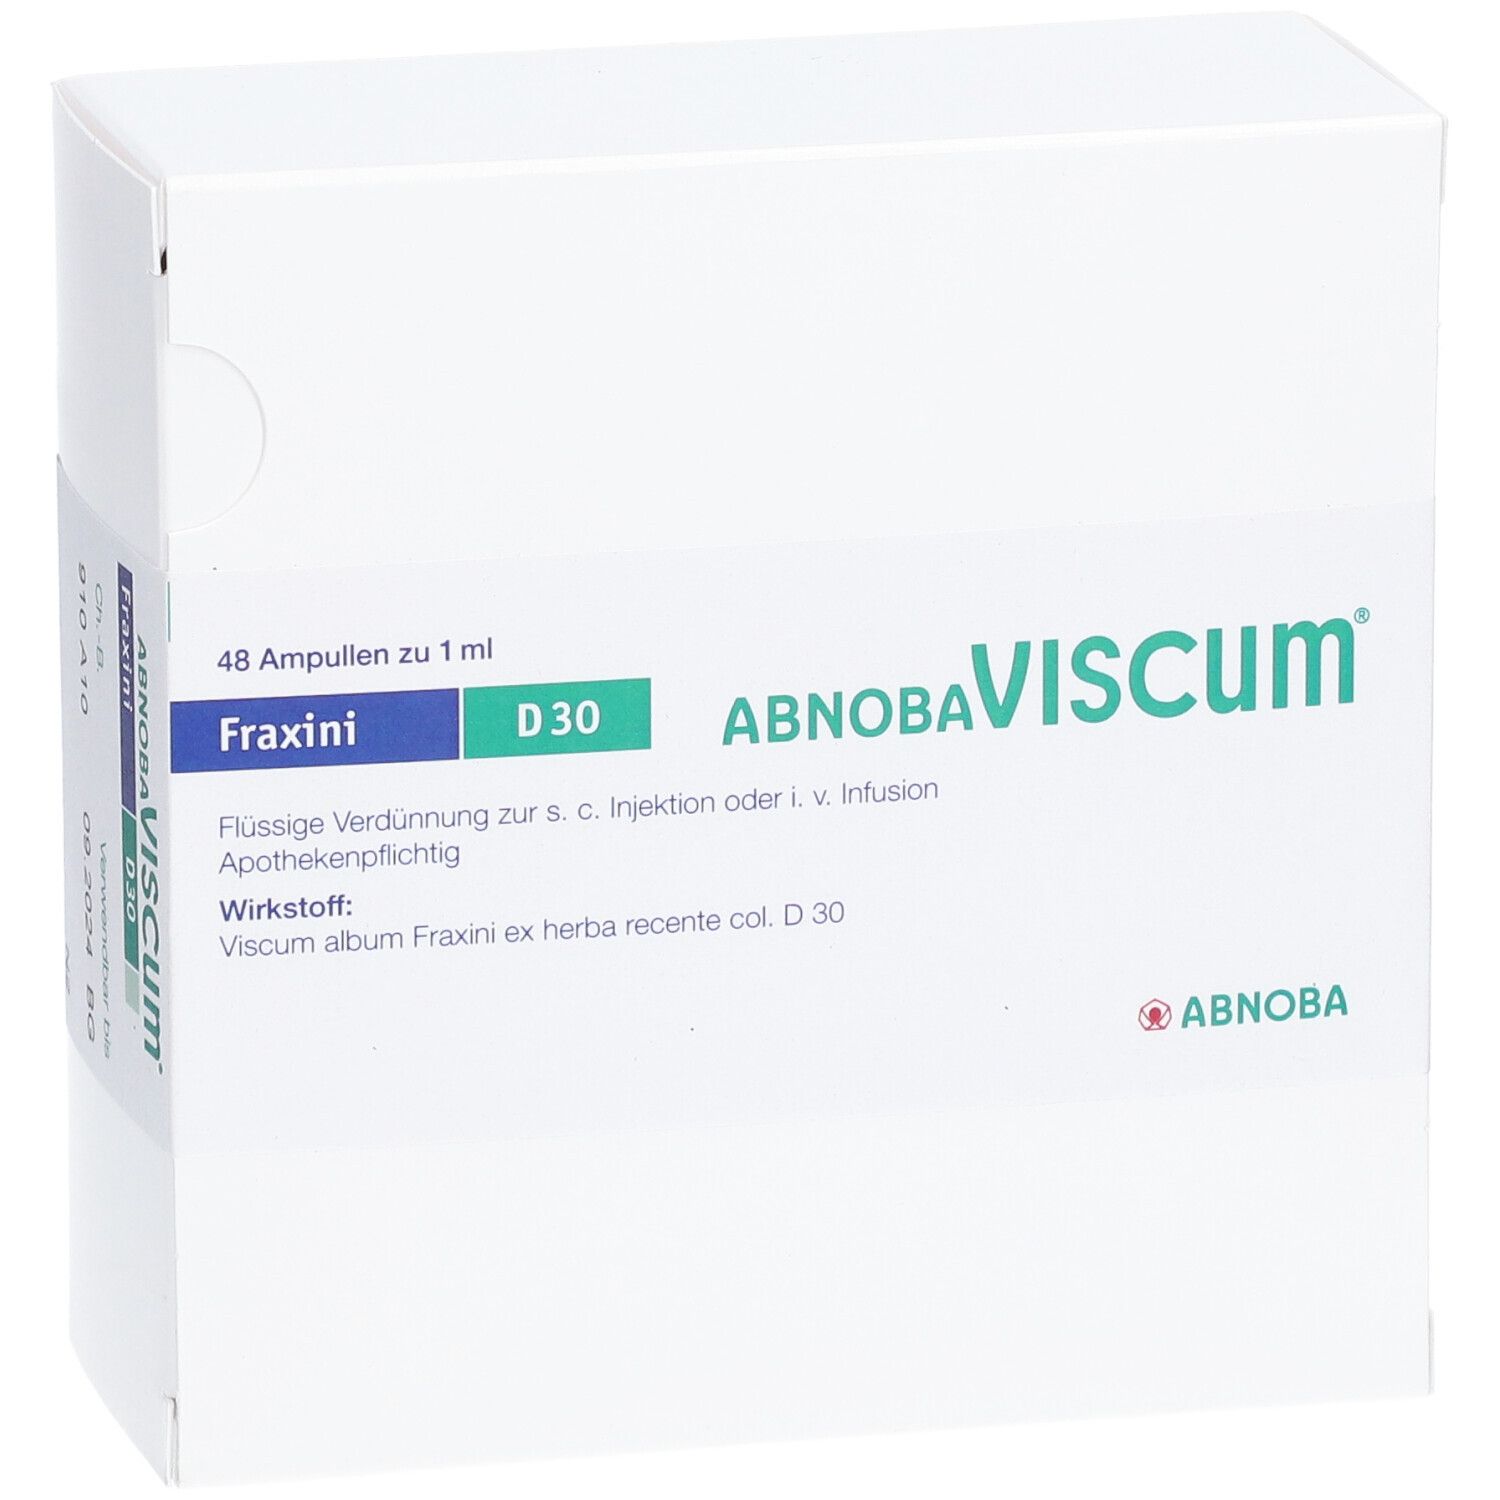 abnobaVISCUM® Fraxini D30 Ampullen